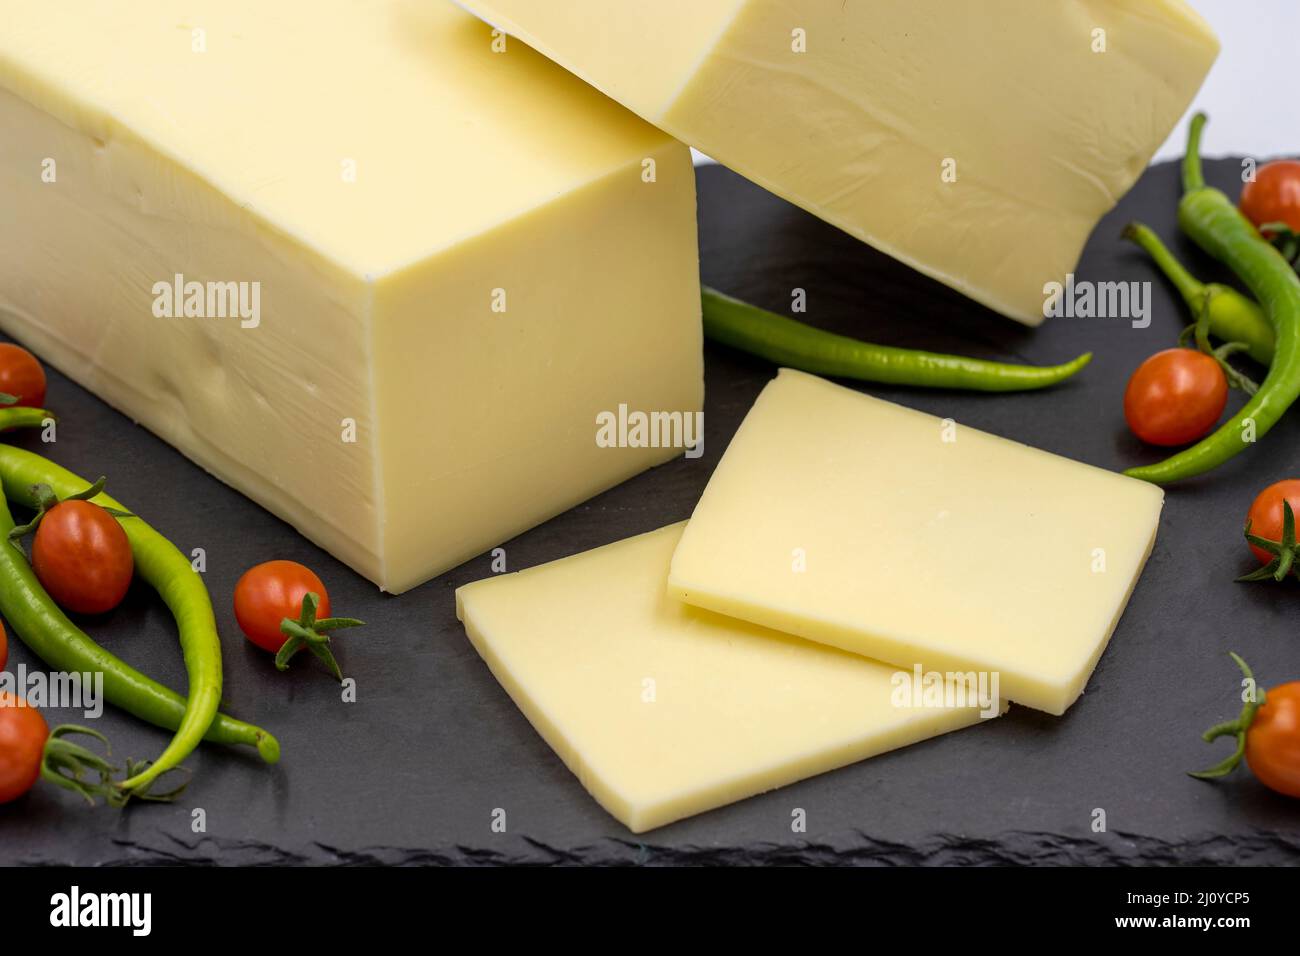 Fromage cheddar ou kashkaval sur fond blanc. Tranches de fromage sur le plateau de service Banque D'Images